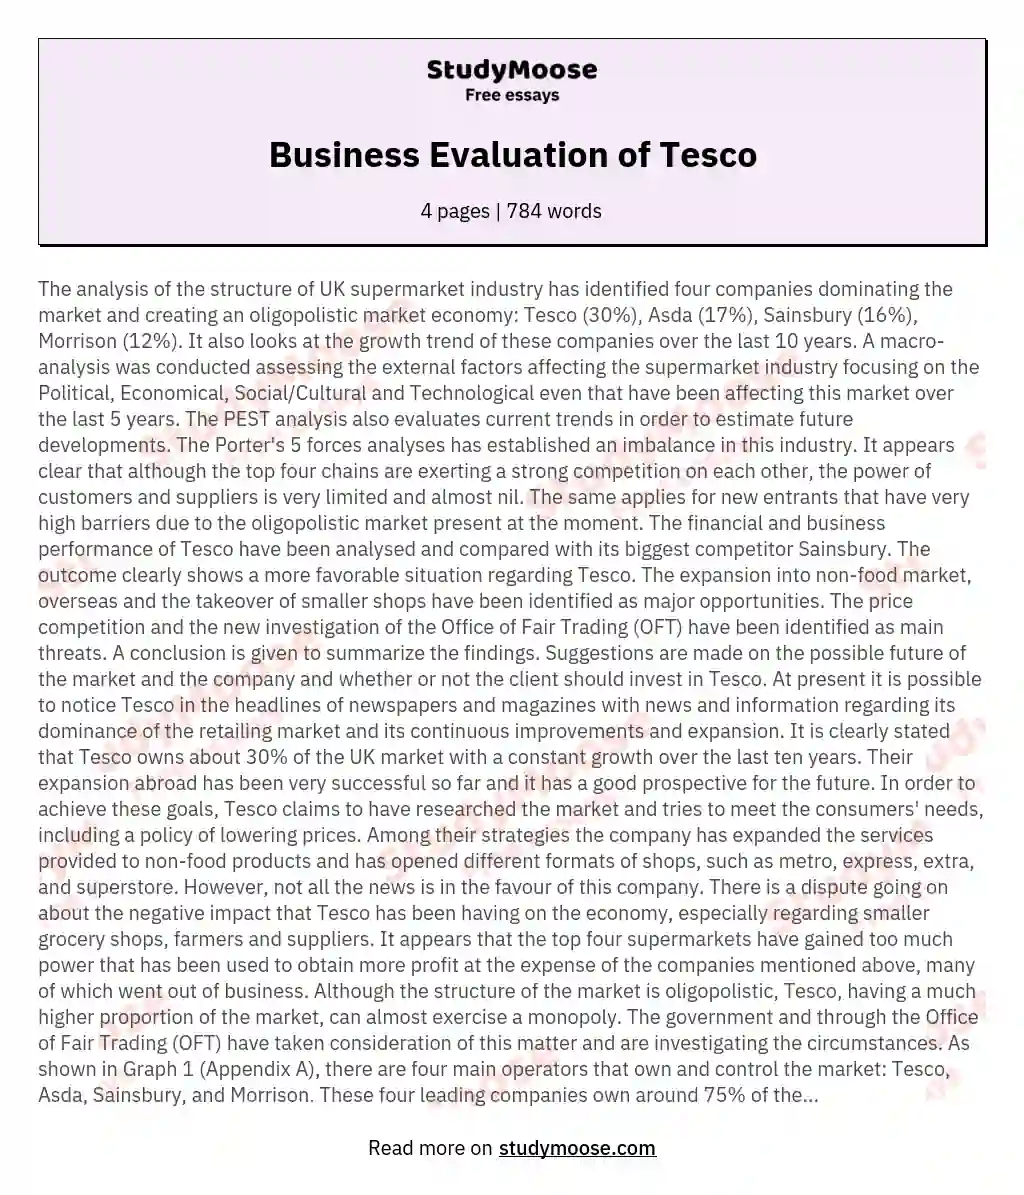 Business Evaluation of Tesco essay